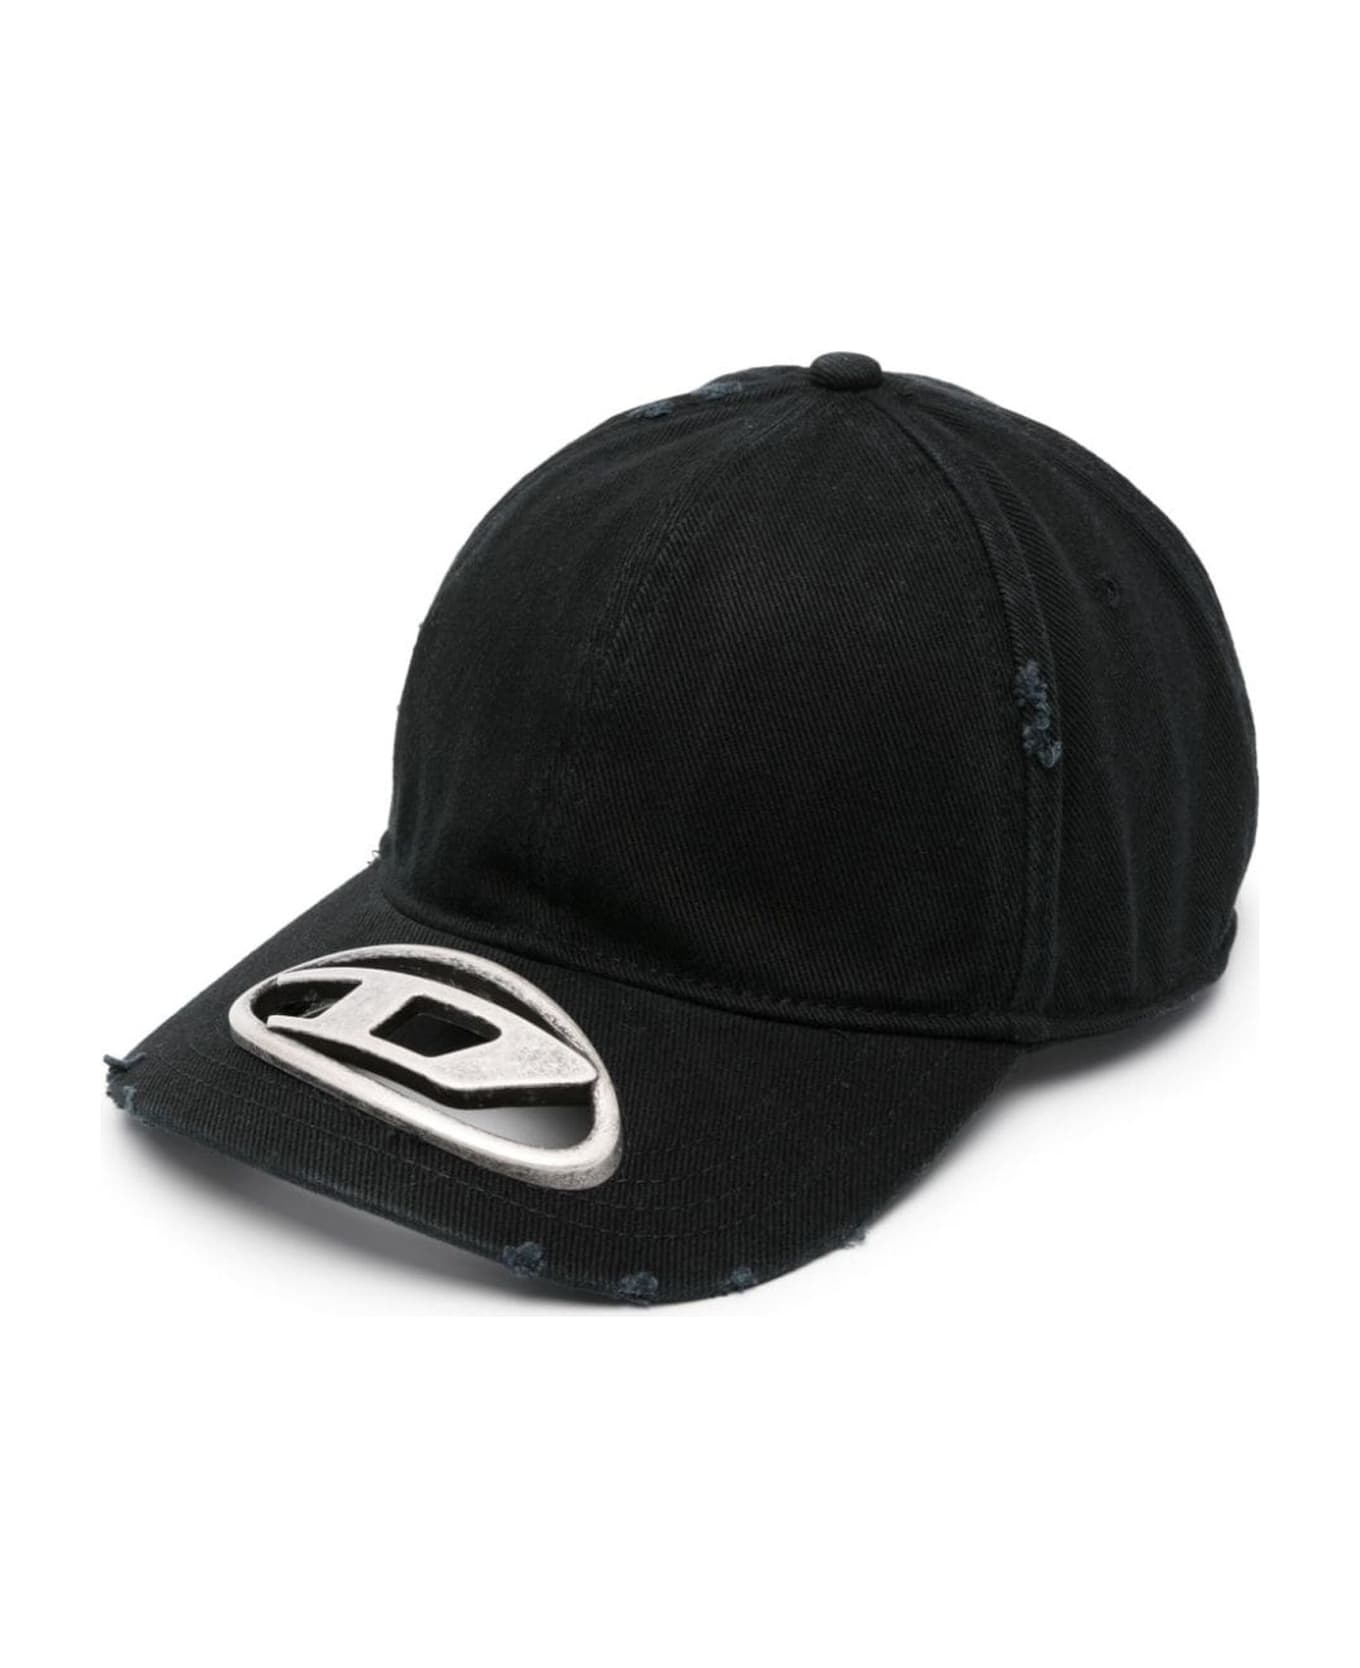 Diesel Hats Black - Black 帽子